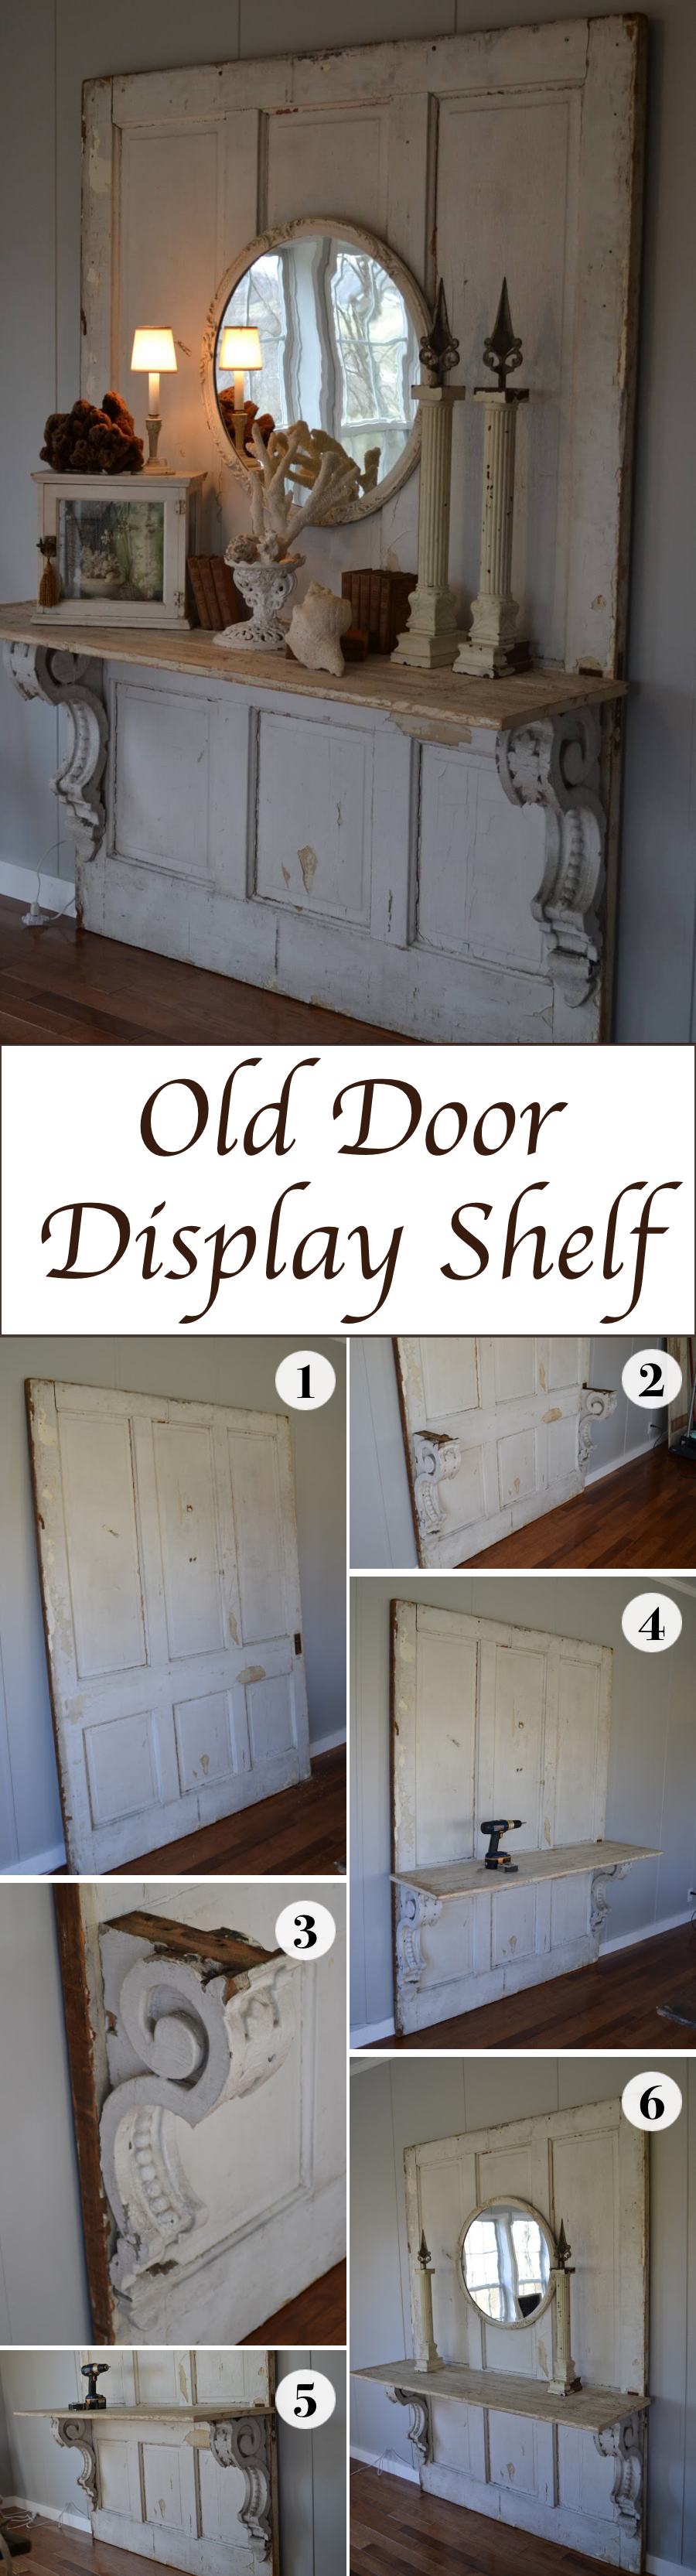 Old Door Display Shelf DIY